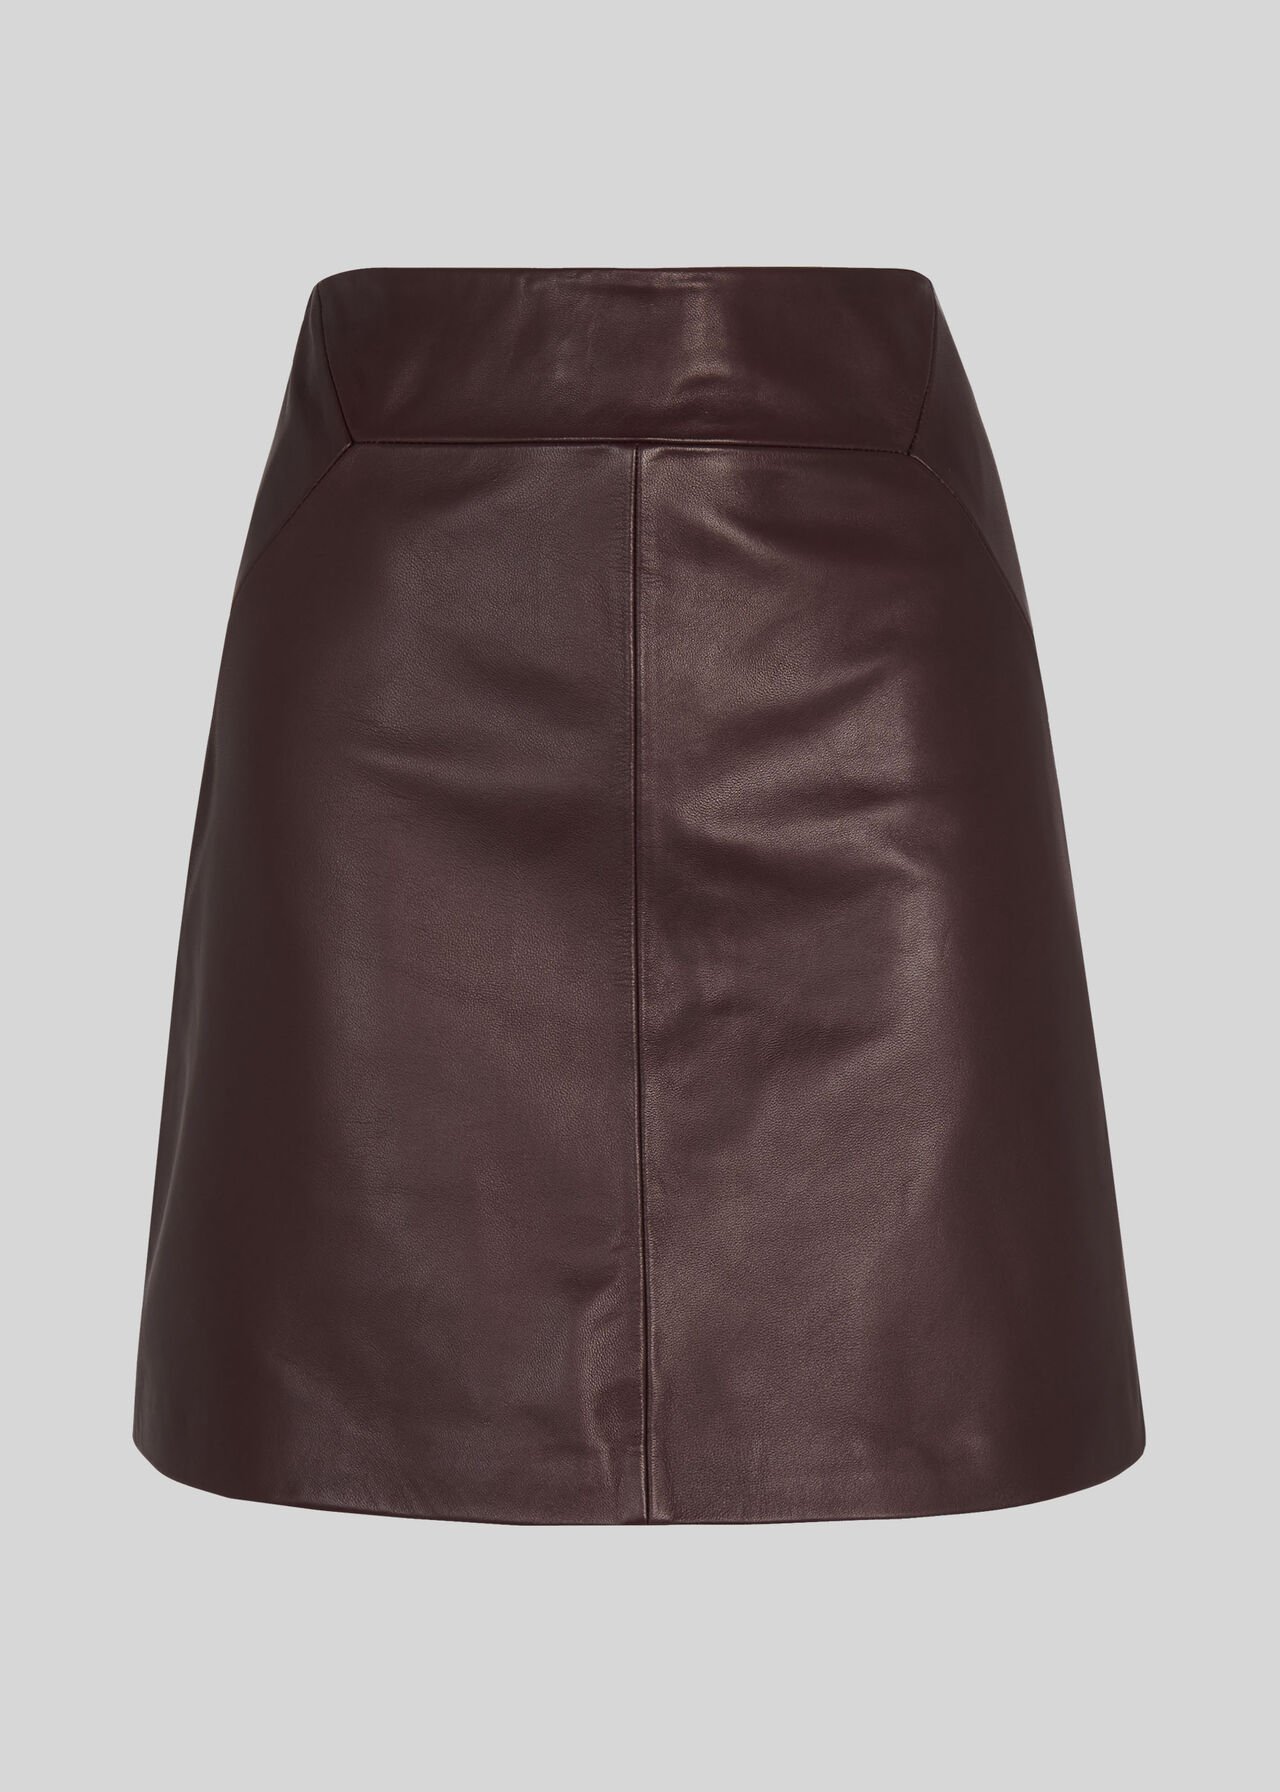 Leather A Line Skirt Burgundy